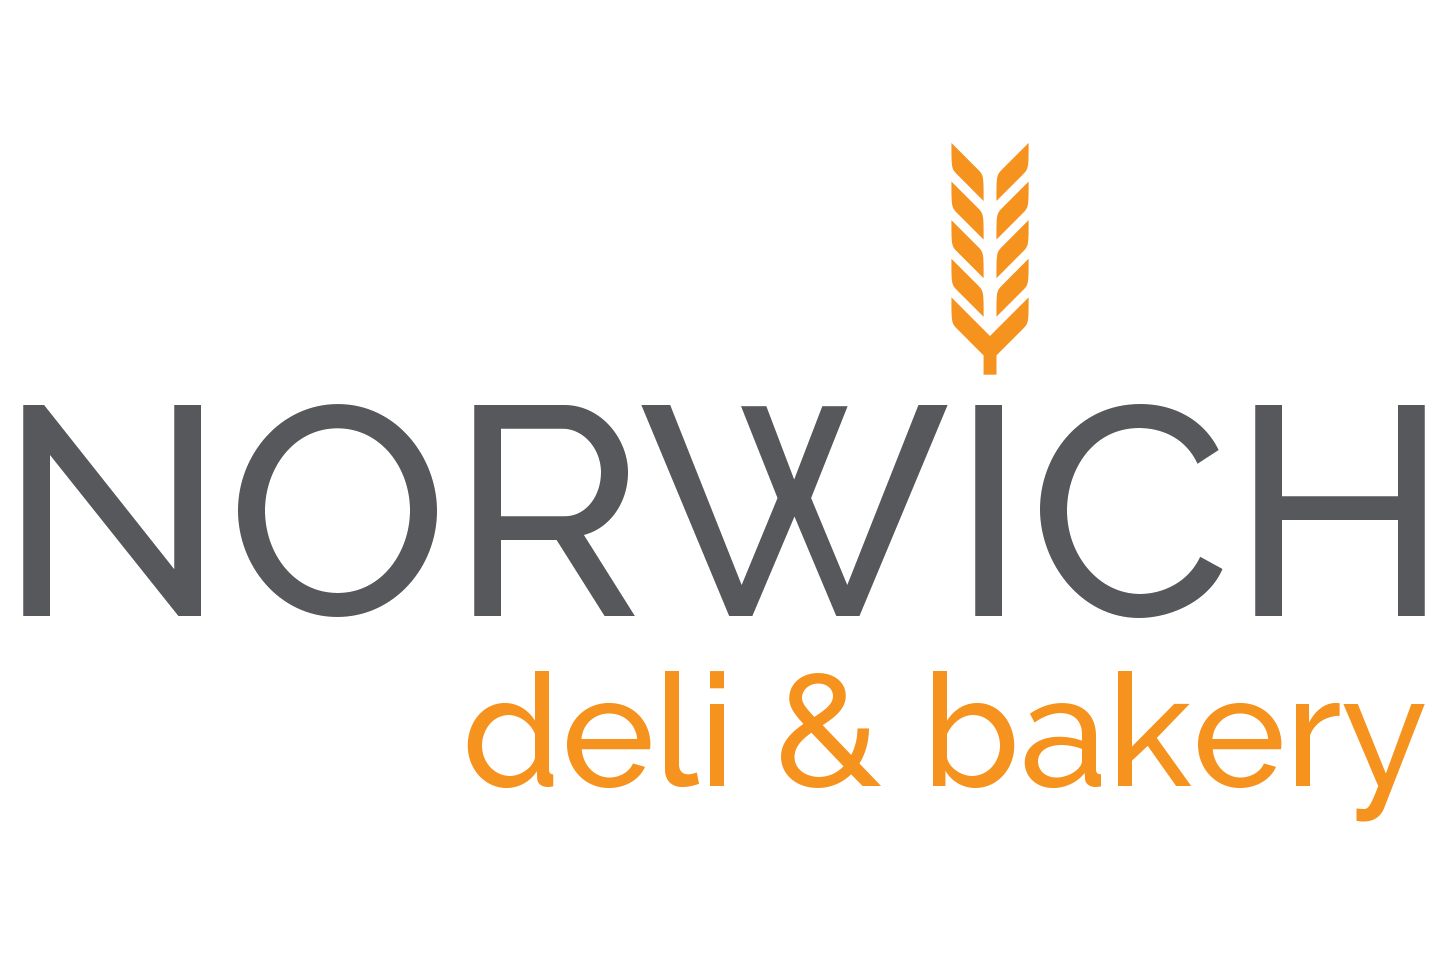 Norwich Deli & Bakery